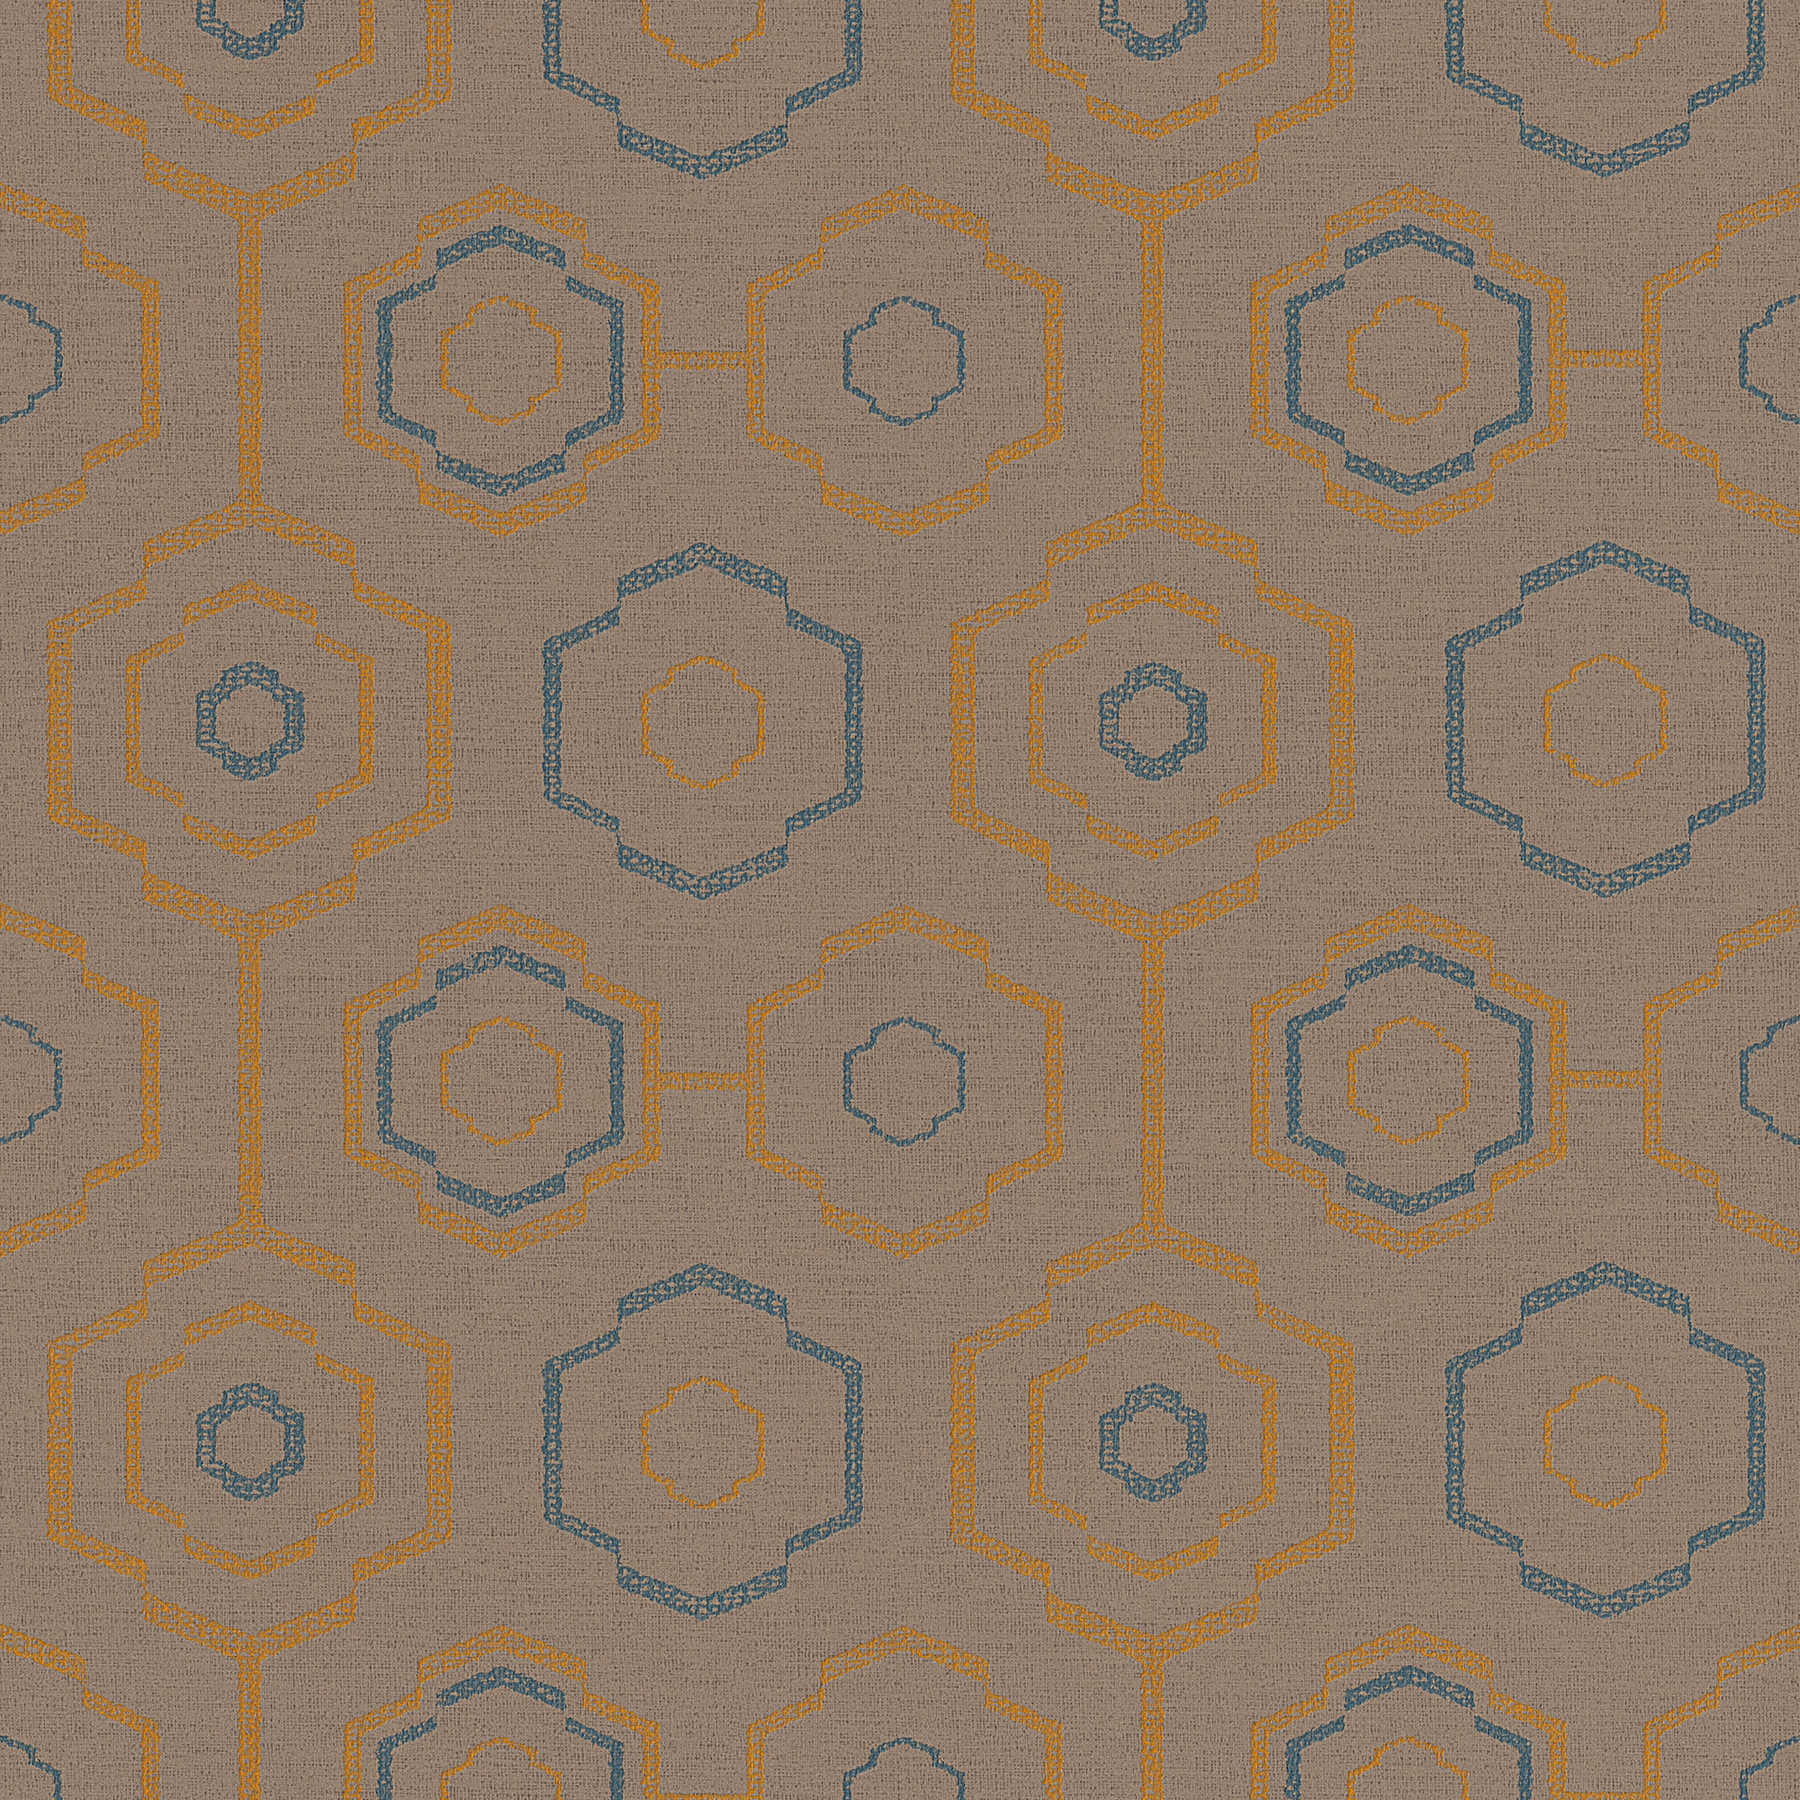 Papier peint motif textile indigène avec dessin géométrique - marron, bleu, orange
